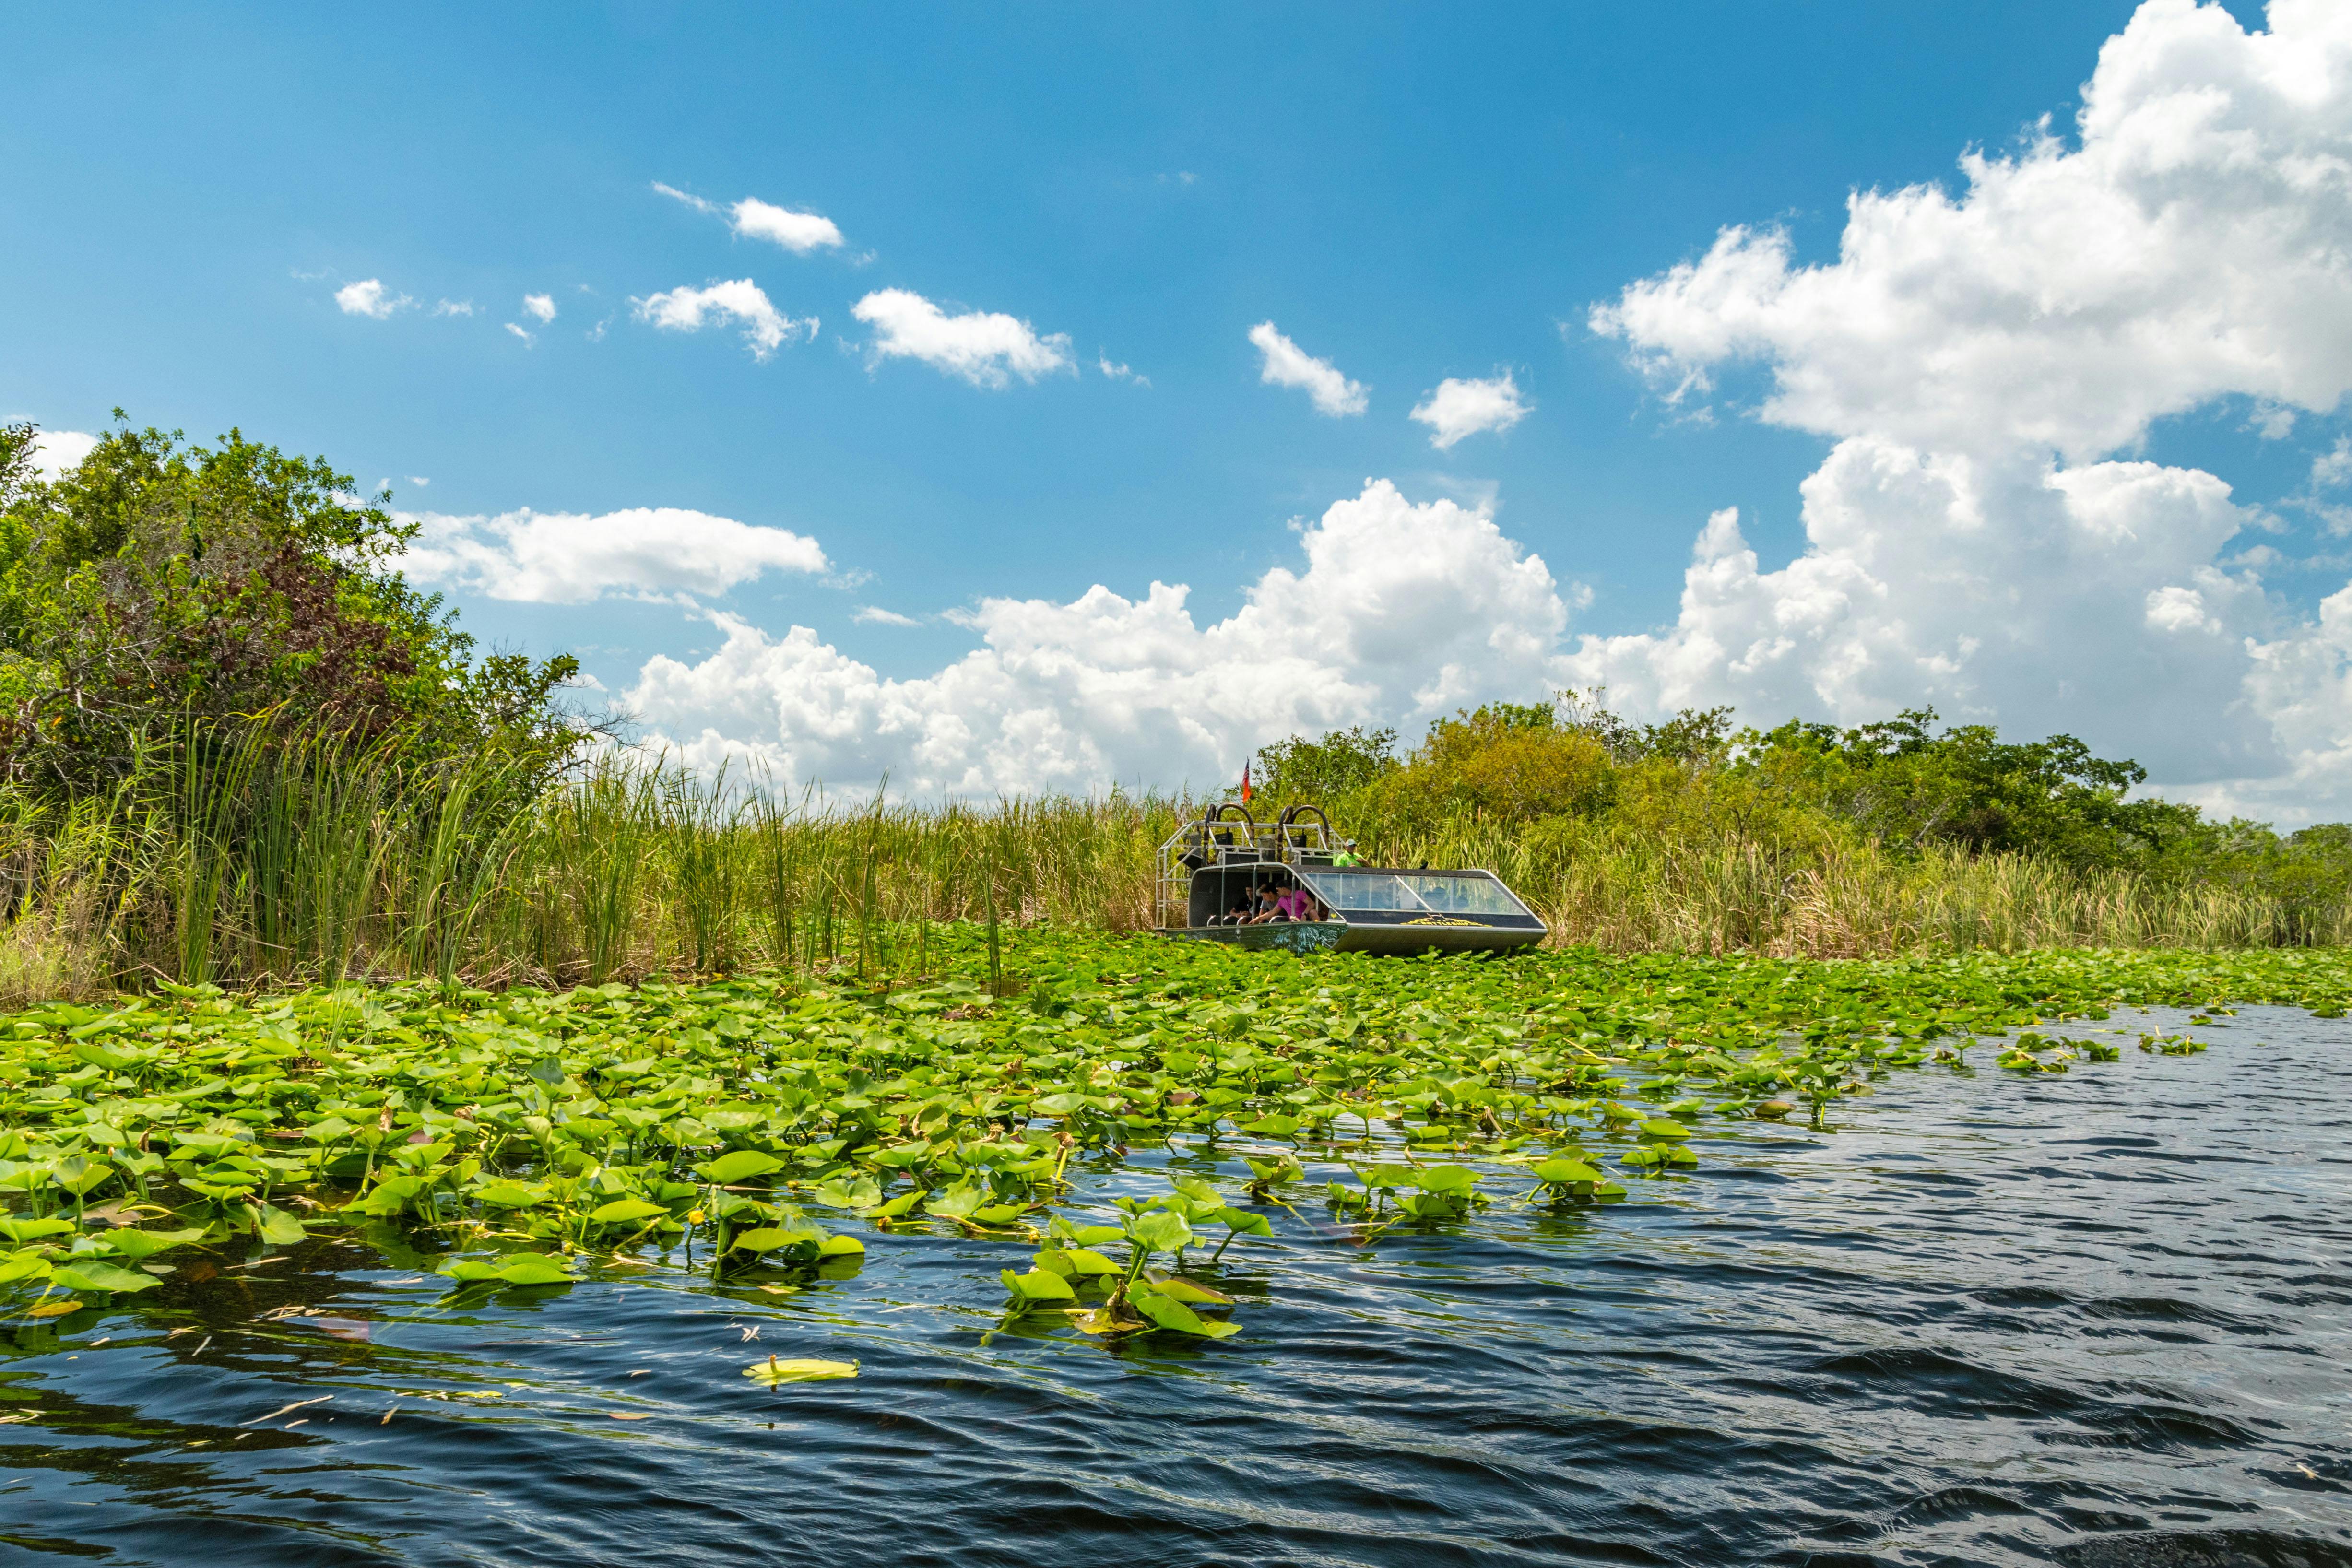 Ingresso para Everglades com passeio de aerobarco e show de vida selvagem